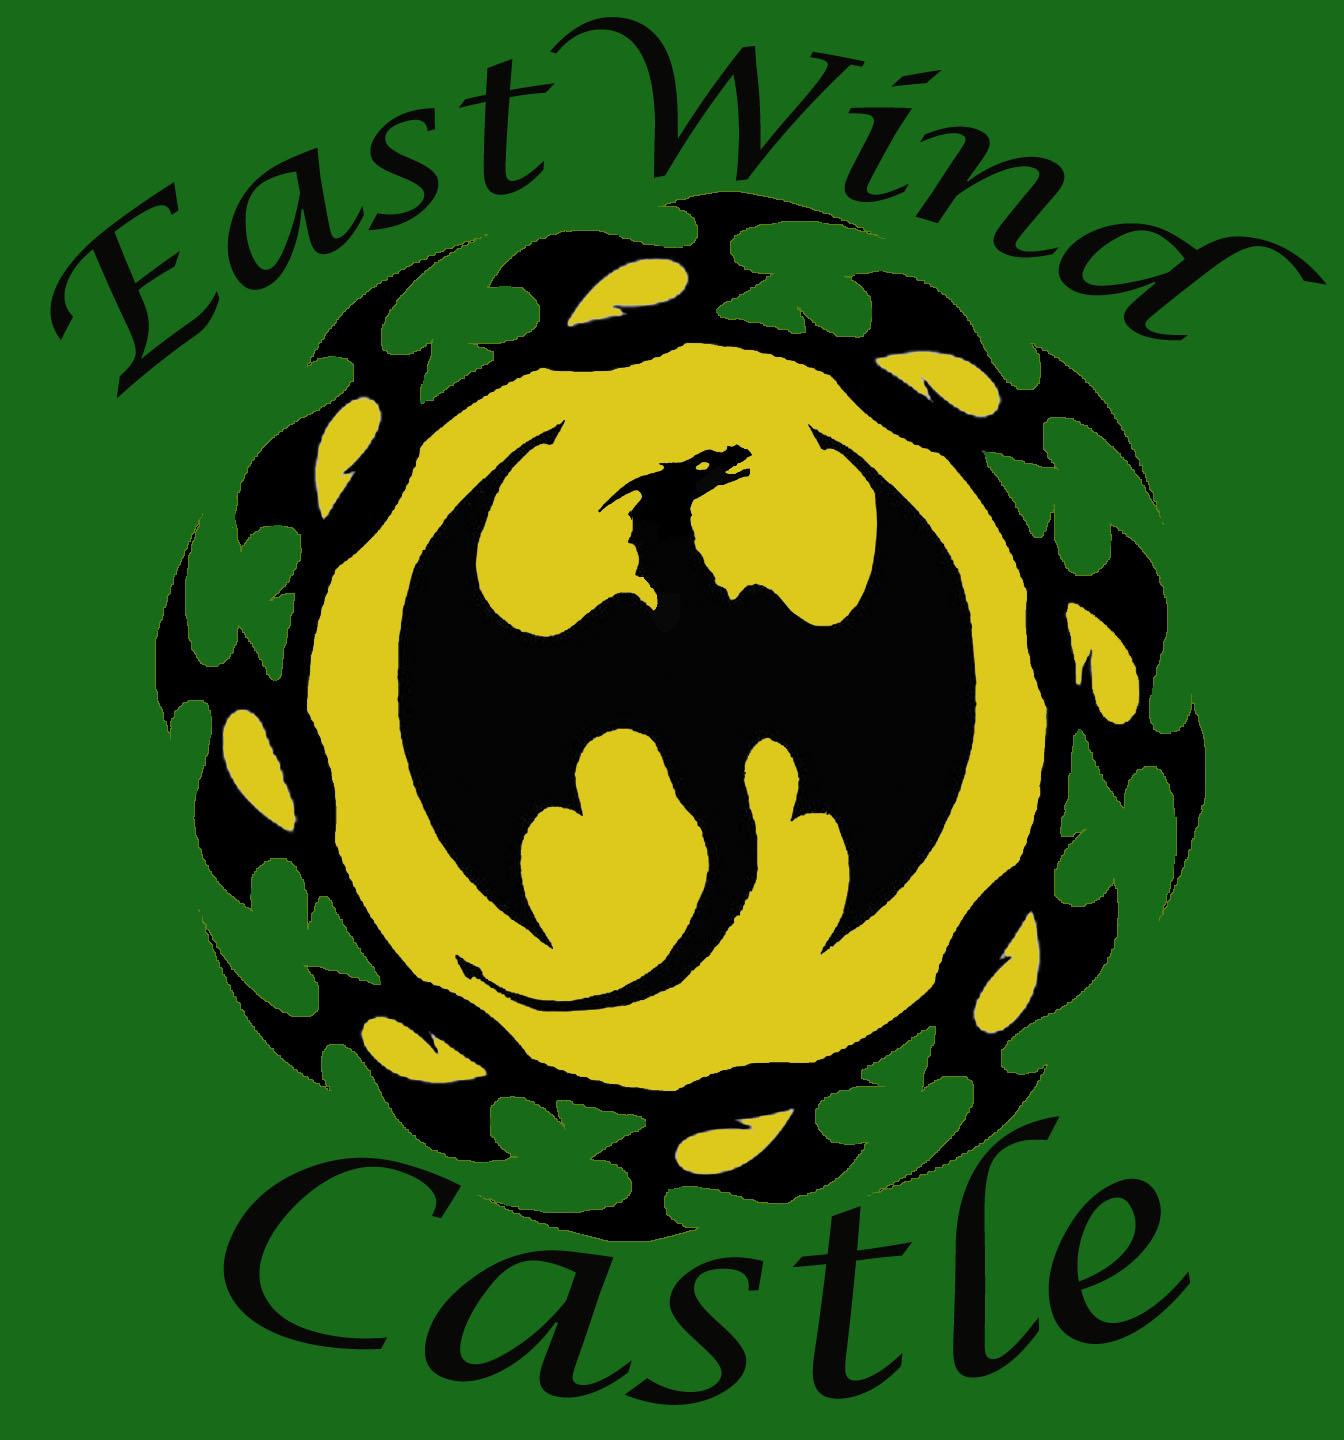 EastWind Castle.jpg